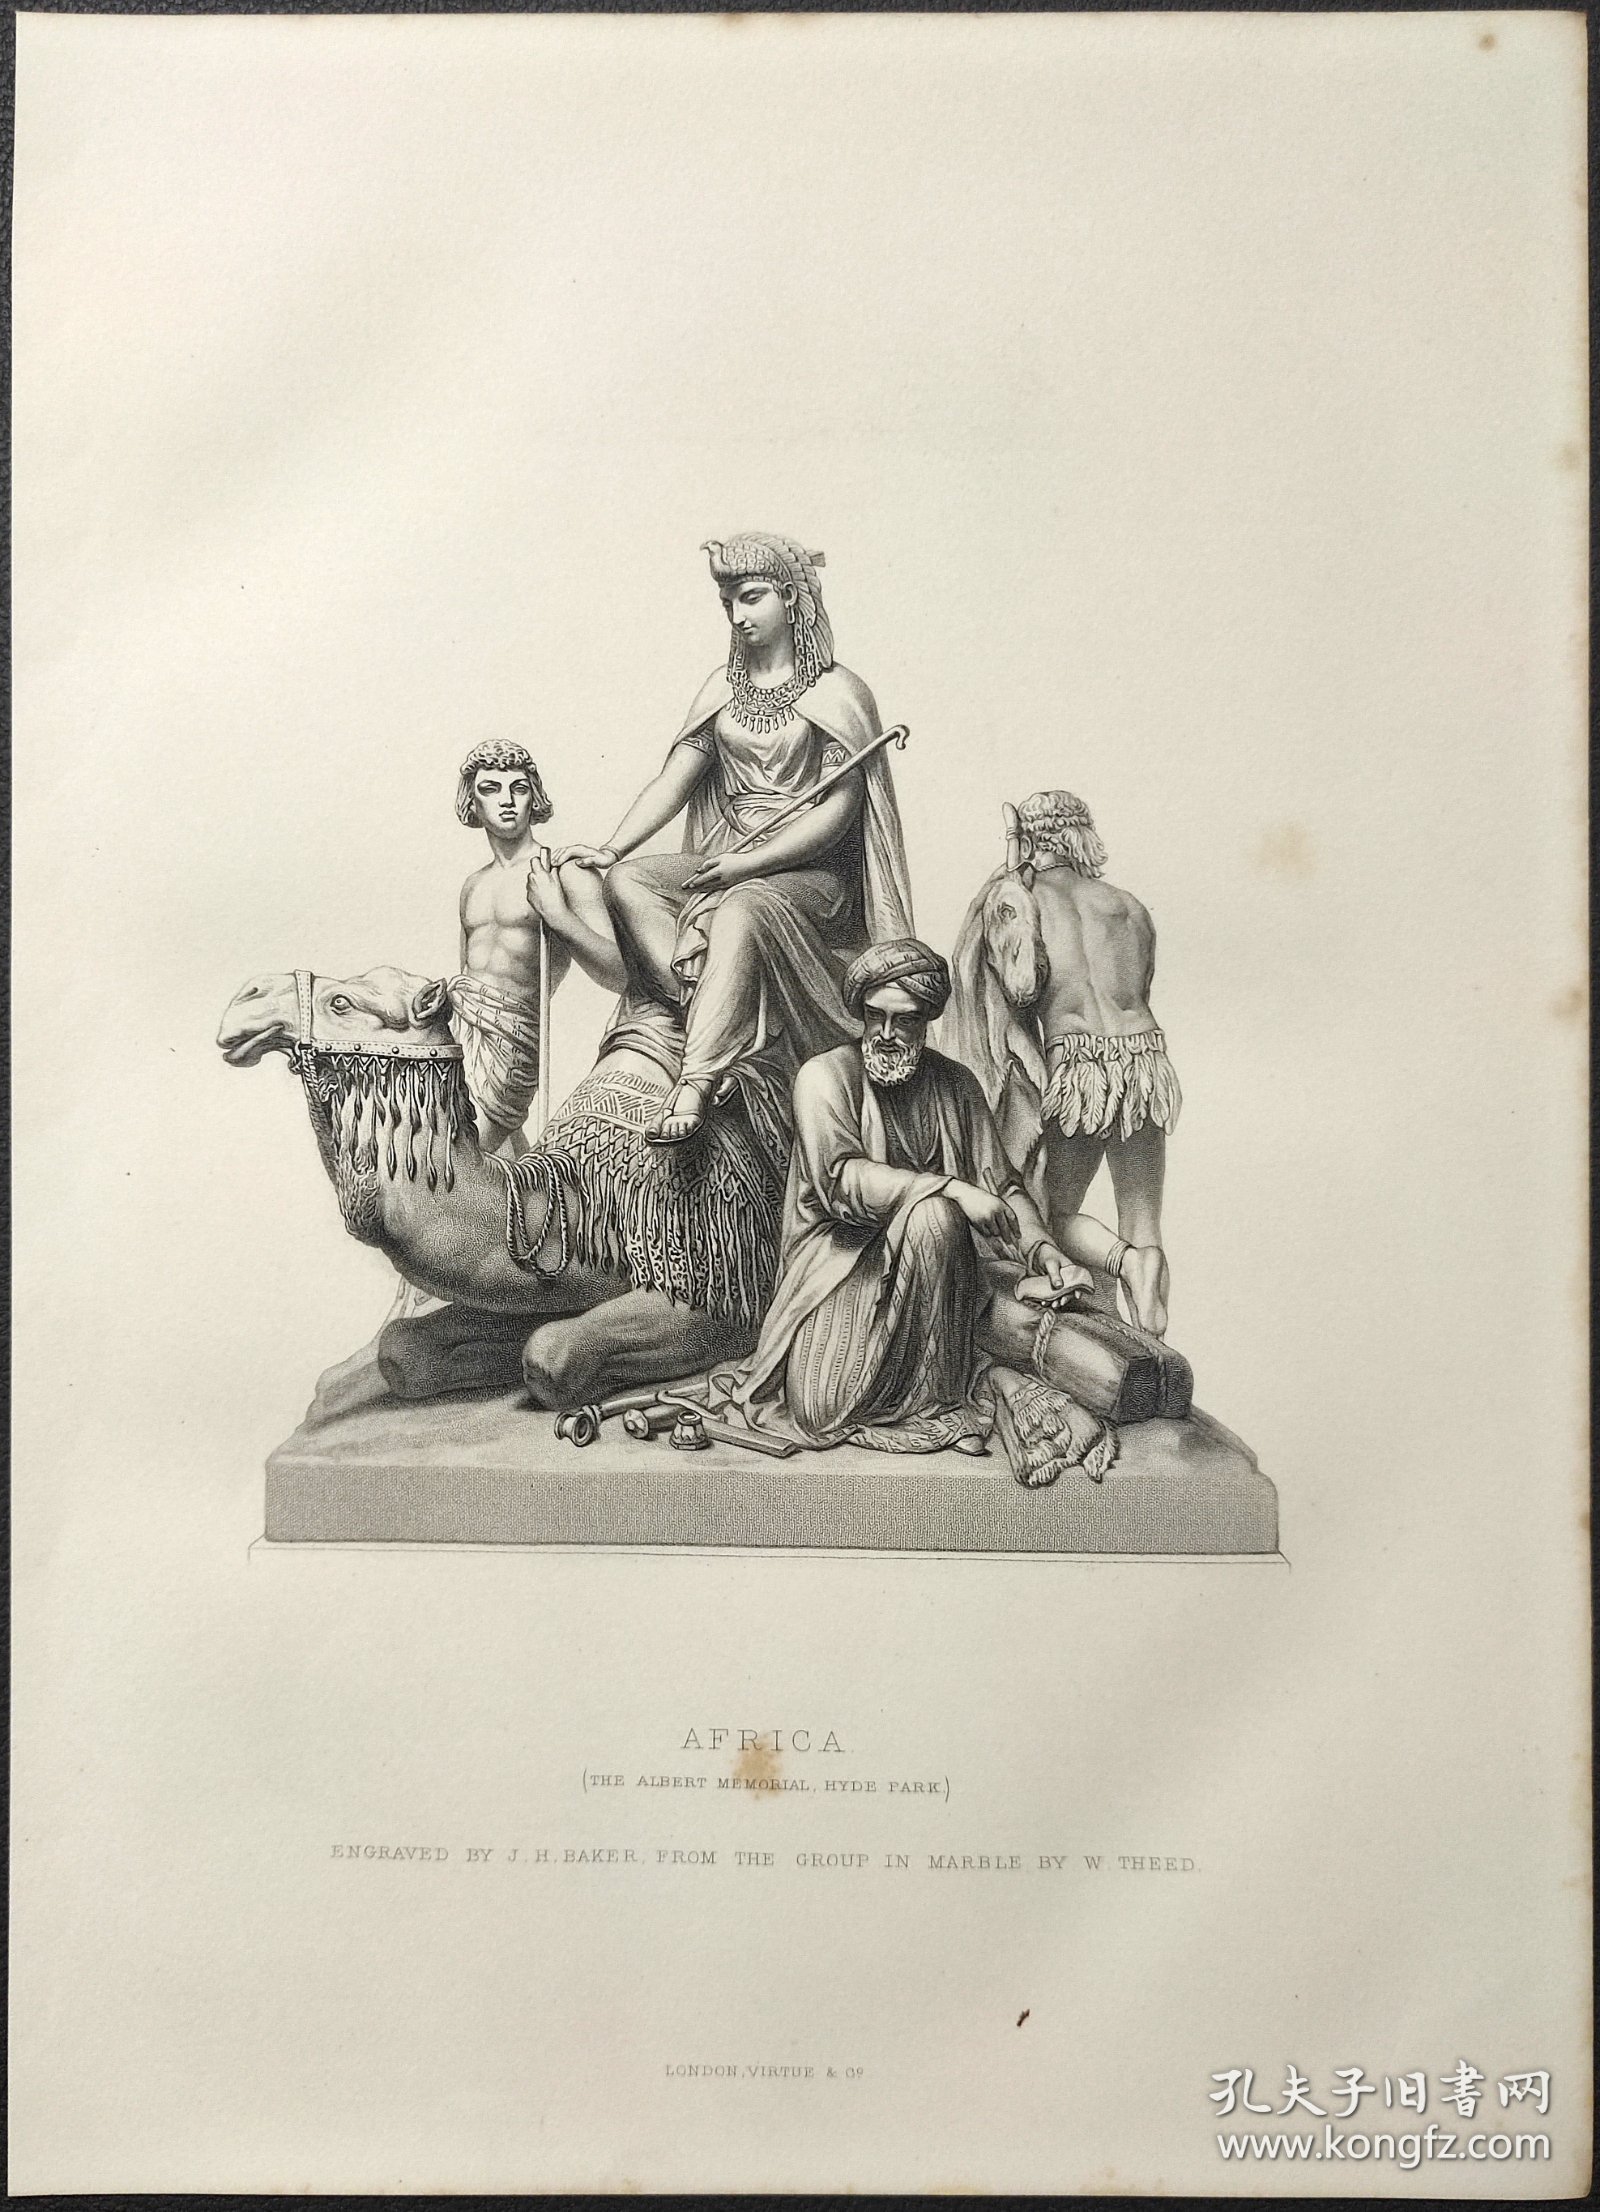 1872年 钢版画 点刻凹版《AFRICA》